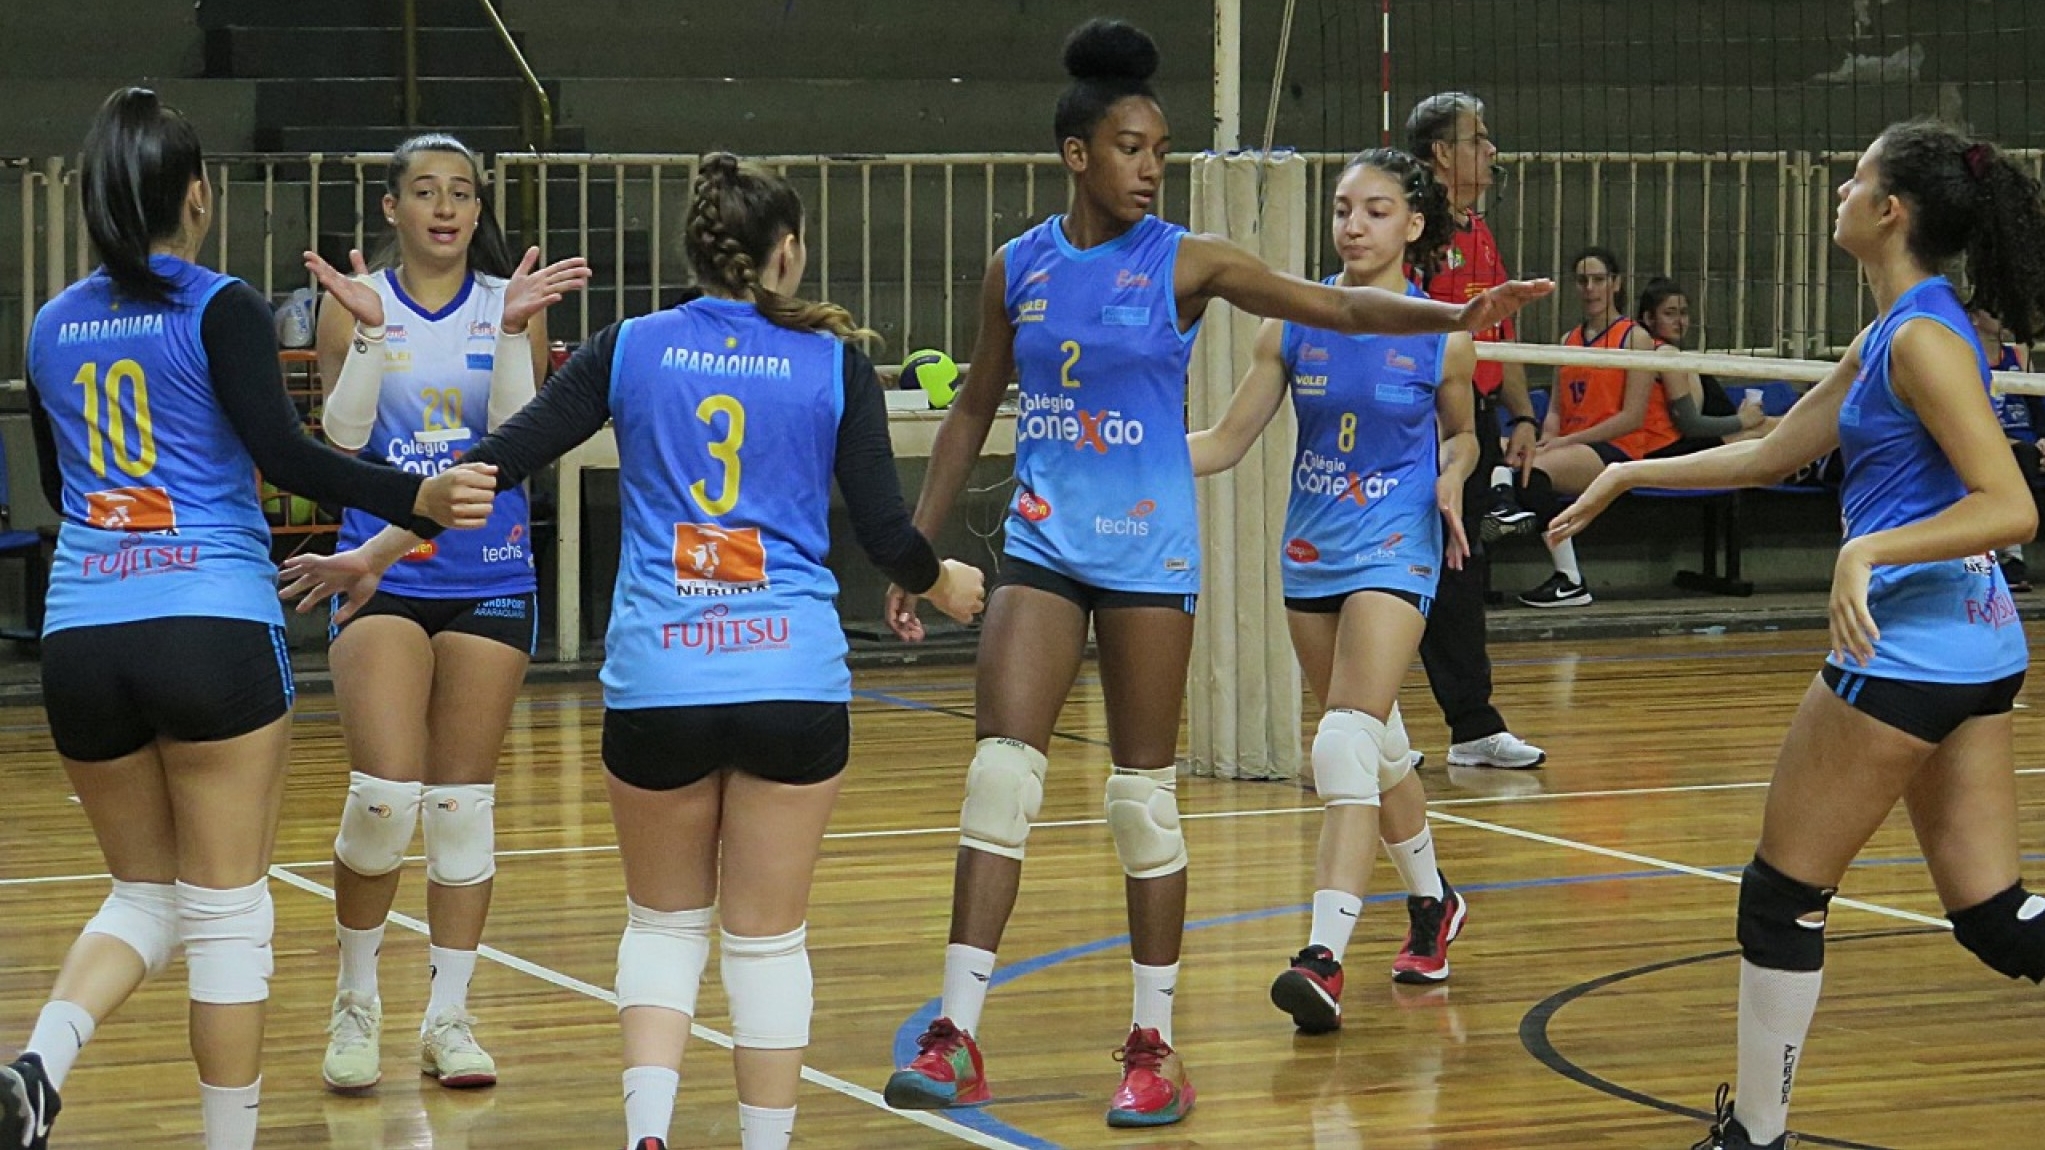 Vôlei feminino sub-20 de Araraquara vence São Carlos Clube - Portal Morada  - Notícias de Araraquara e Região